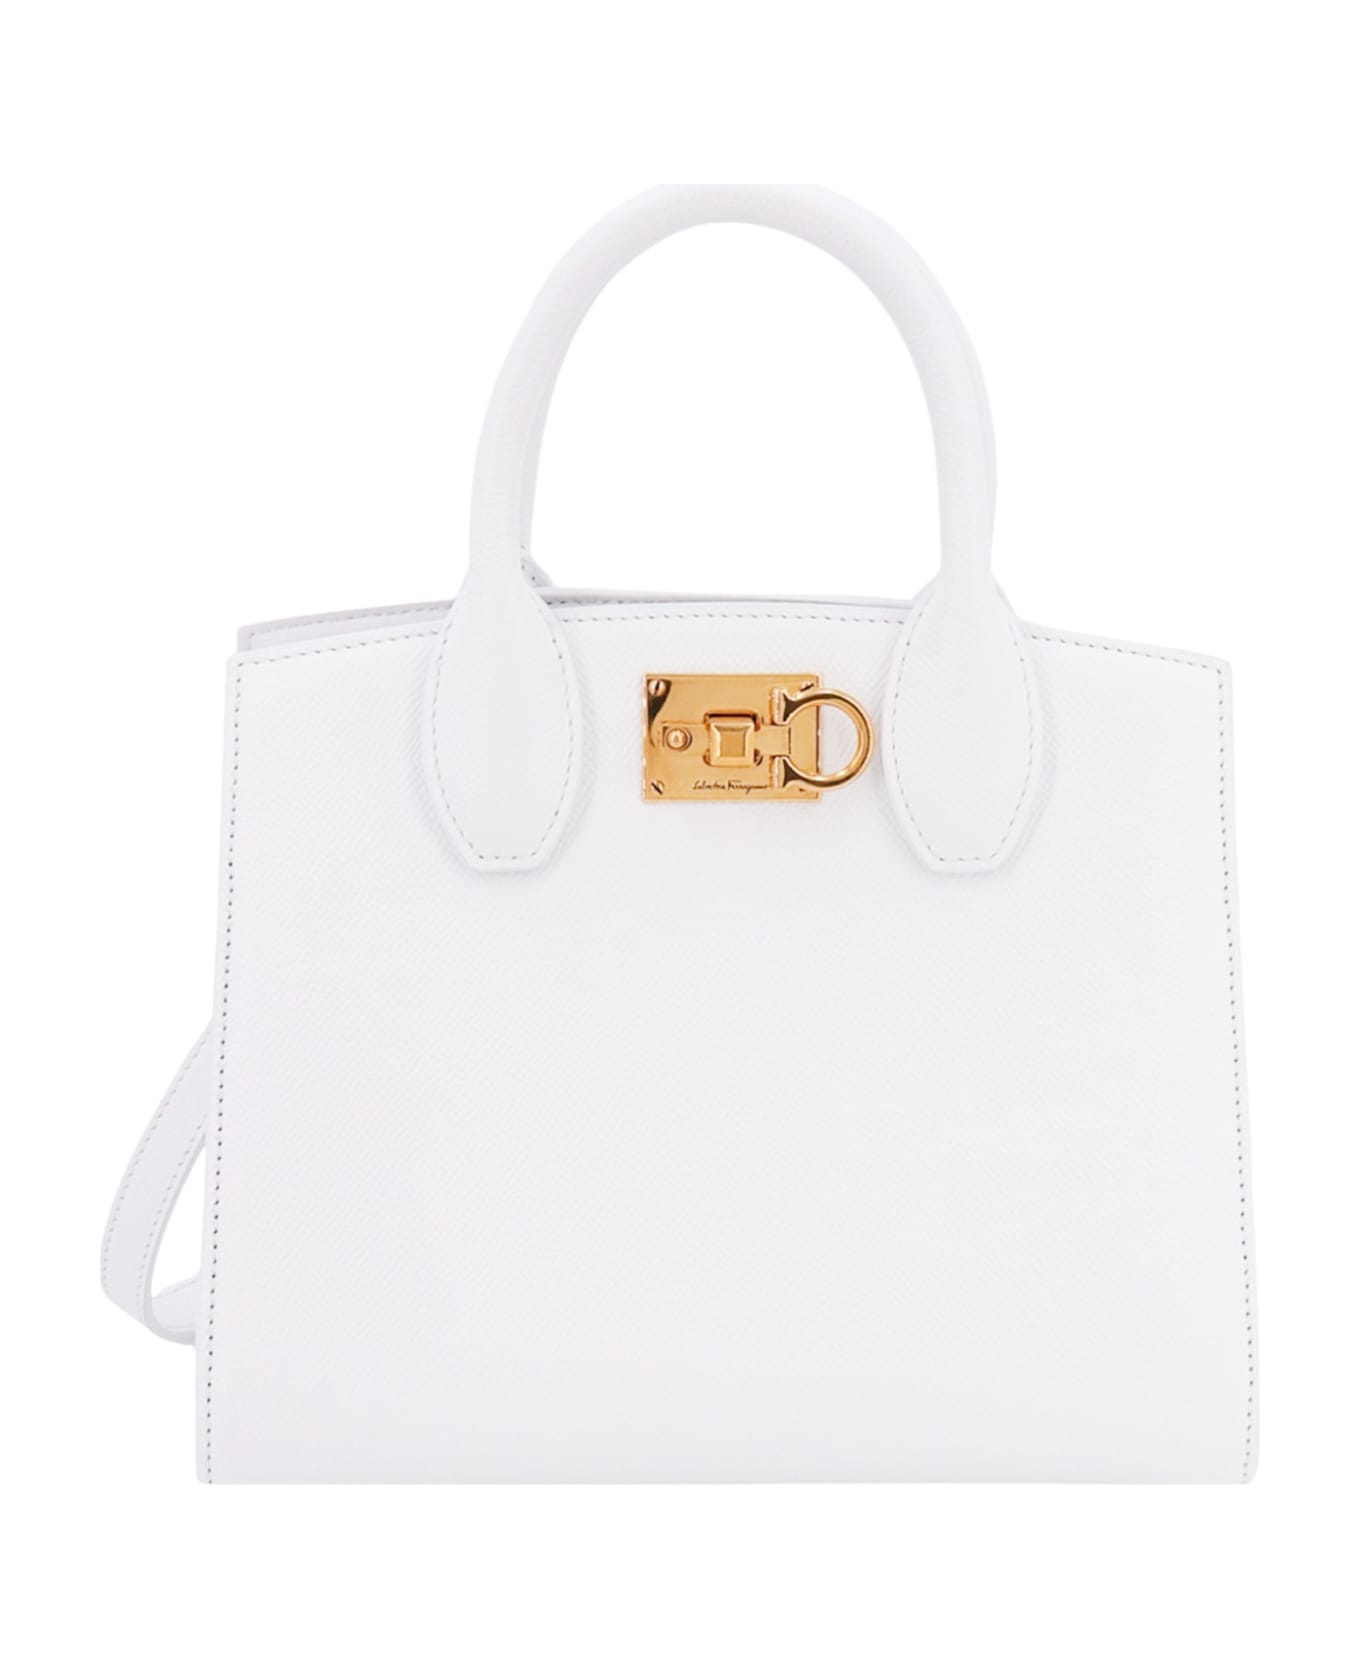 Ferragamo Studio Box Handbag - WHITE トートバッグ